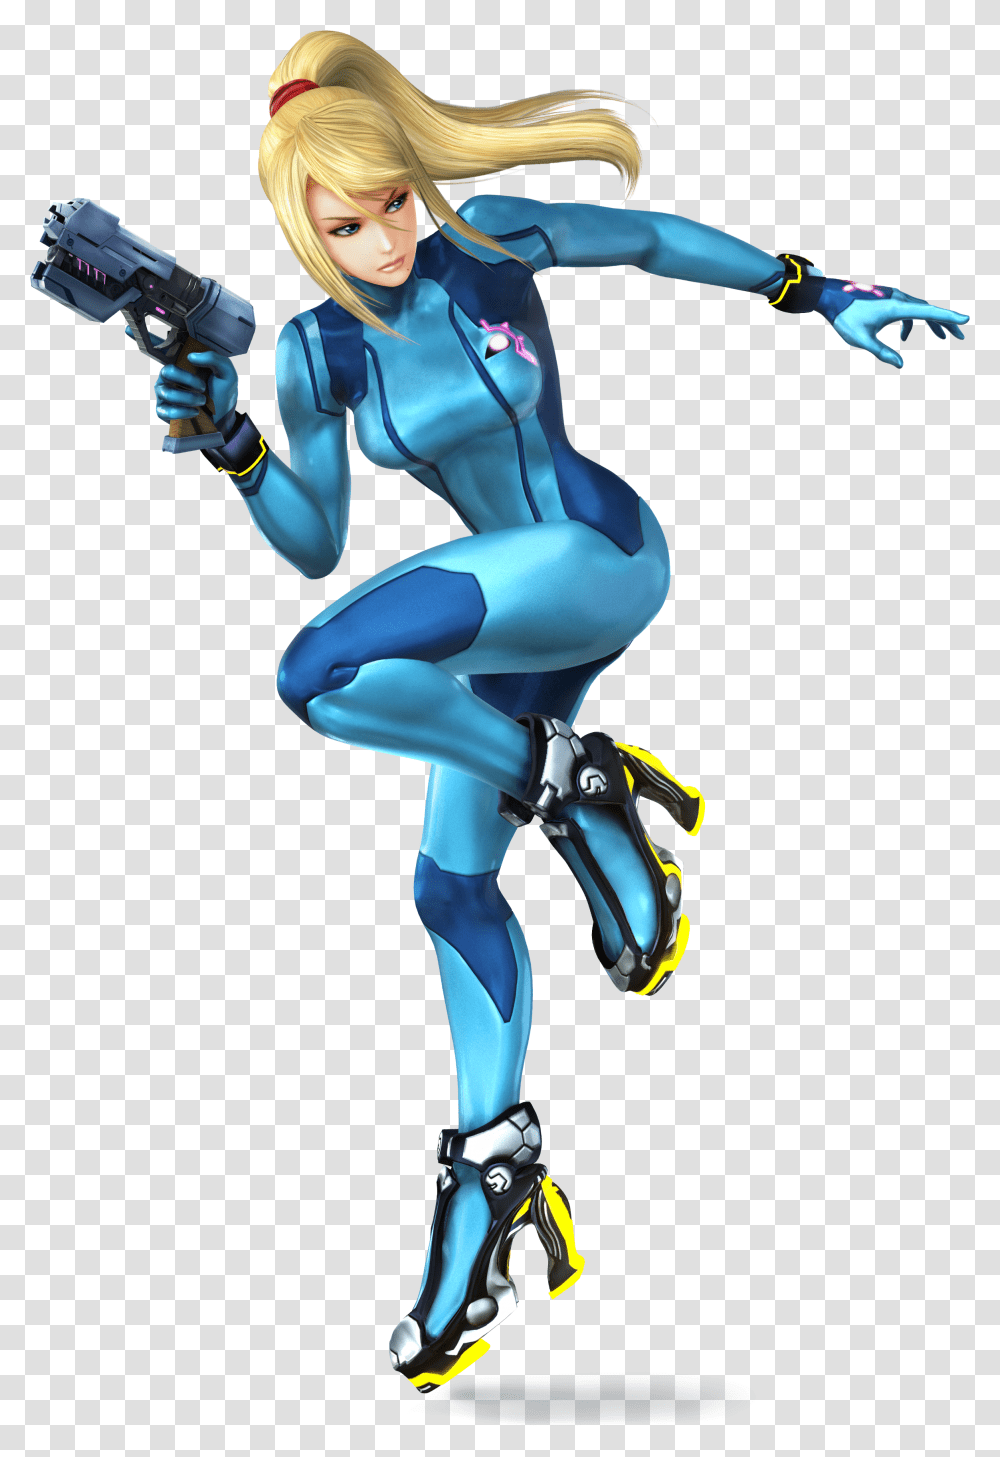 Zero Suit Samus Ssb4 Super Smash Bros Wii U Zero Suit Samus, Robot, Person, Human, Costume Transparent Png